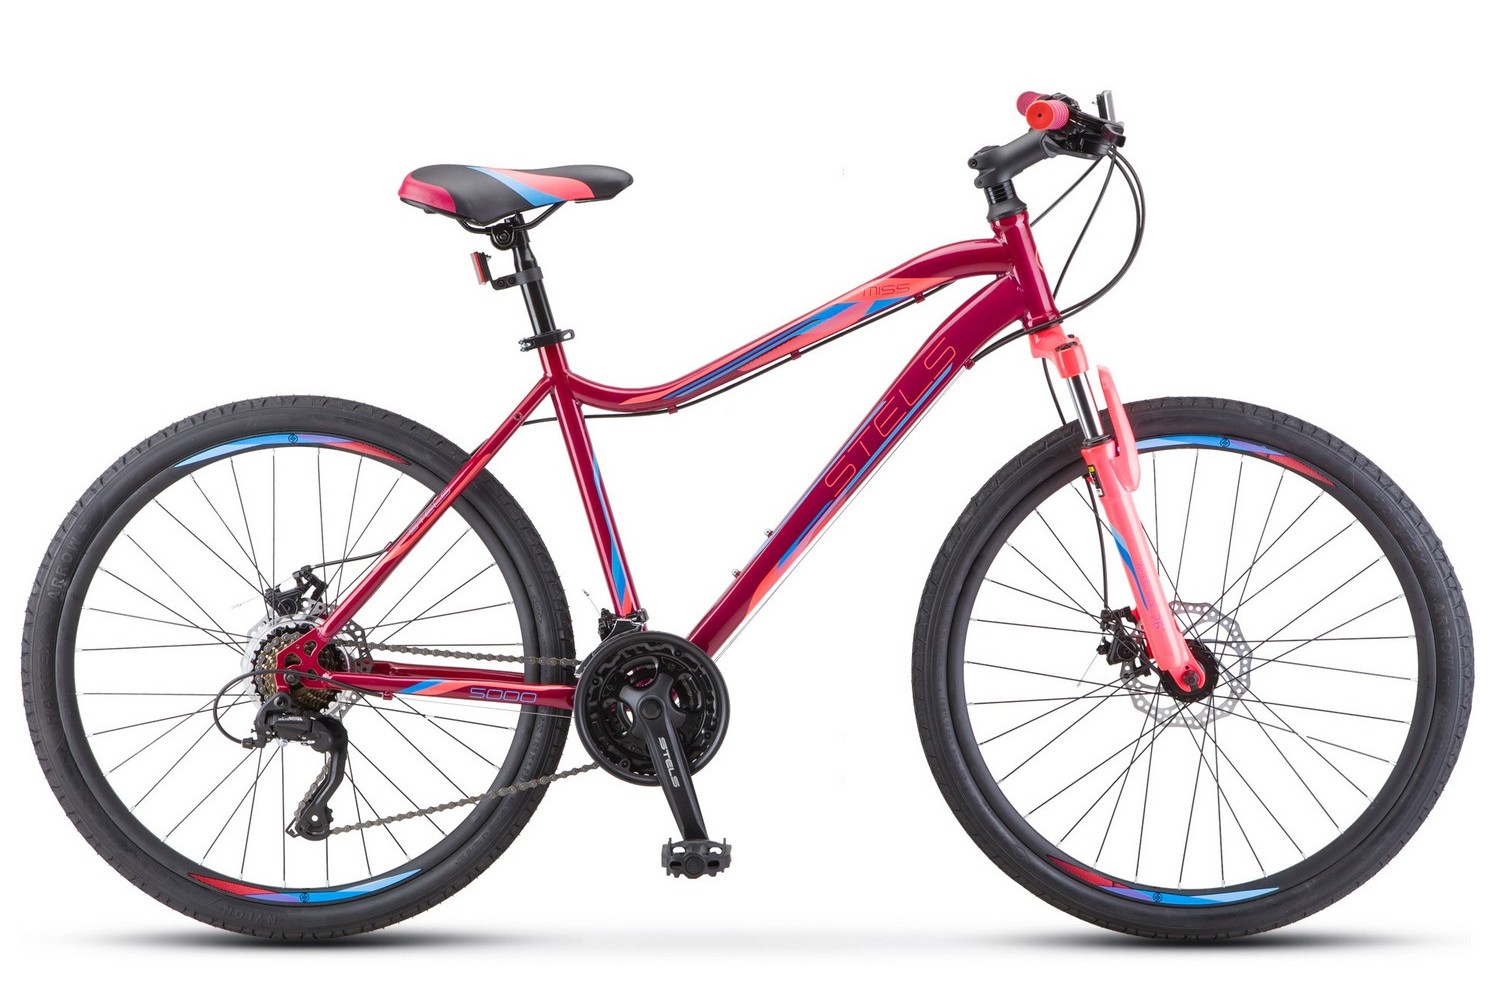 Женский велосипед Stels Miss 5000 MD V020, год 2023, цвет Красный-Розовый, ростовка 18